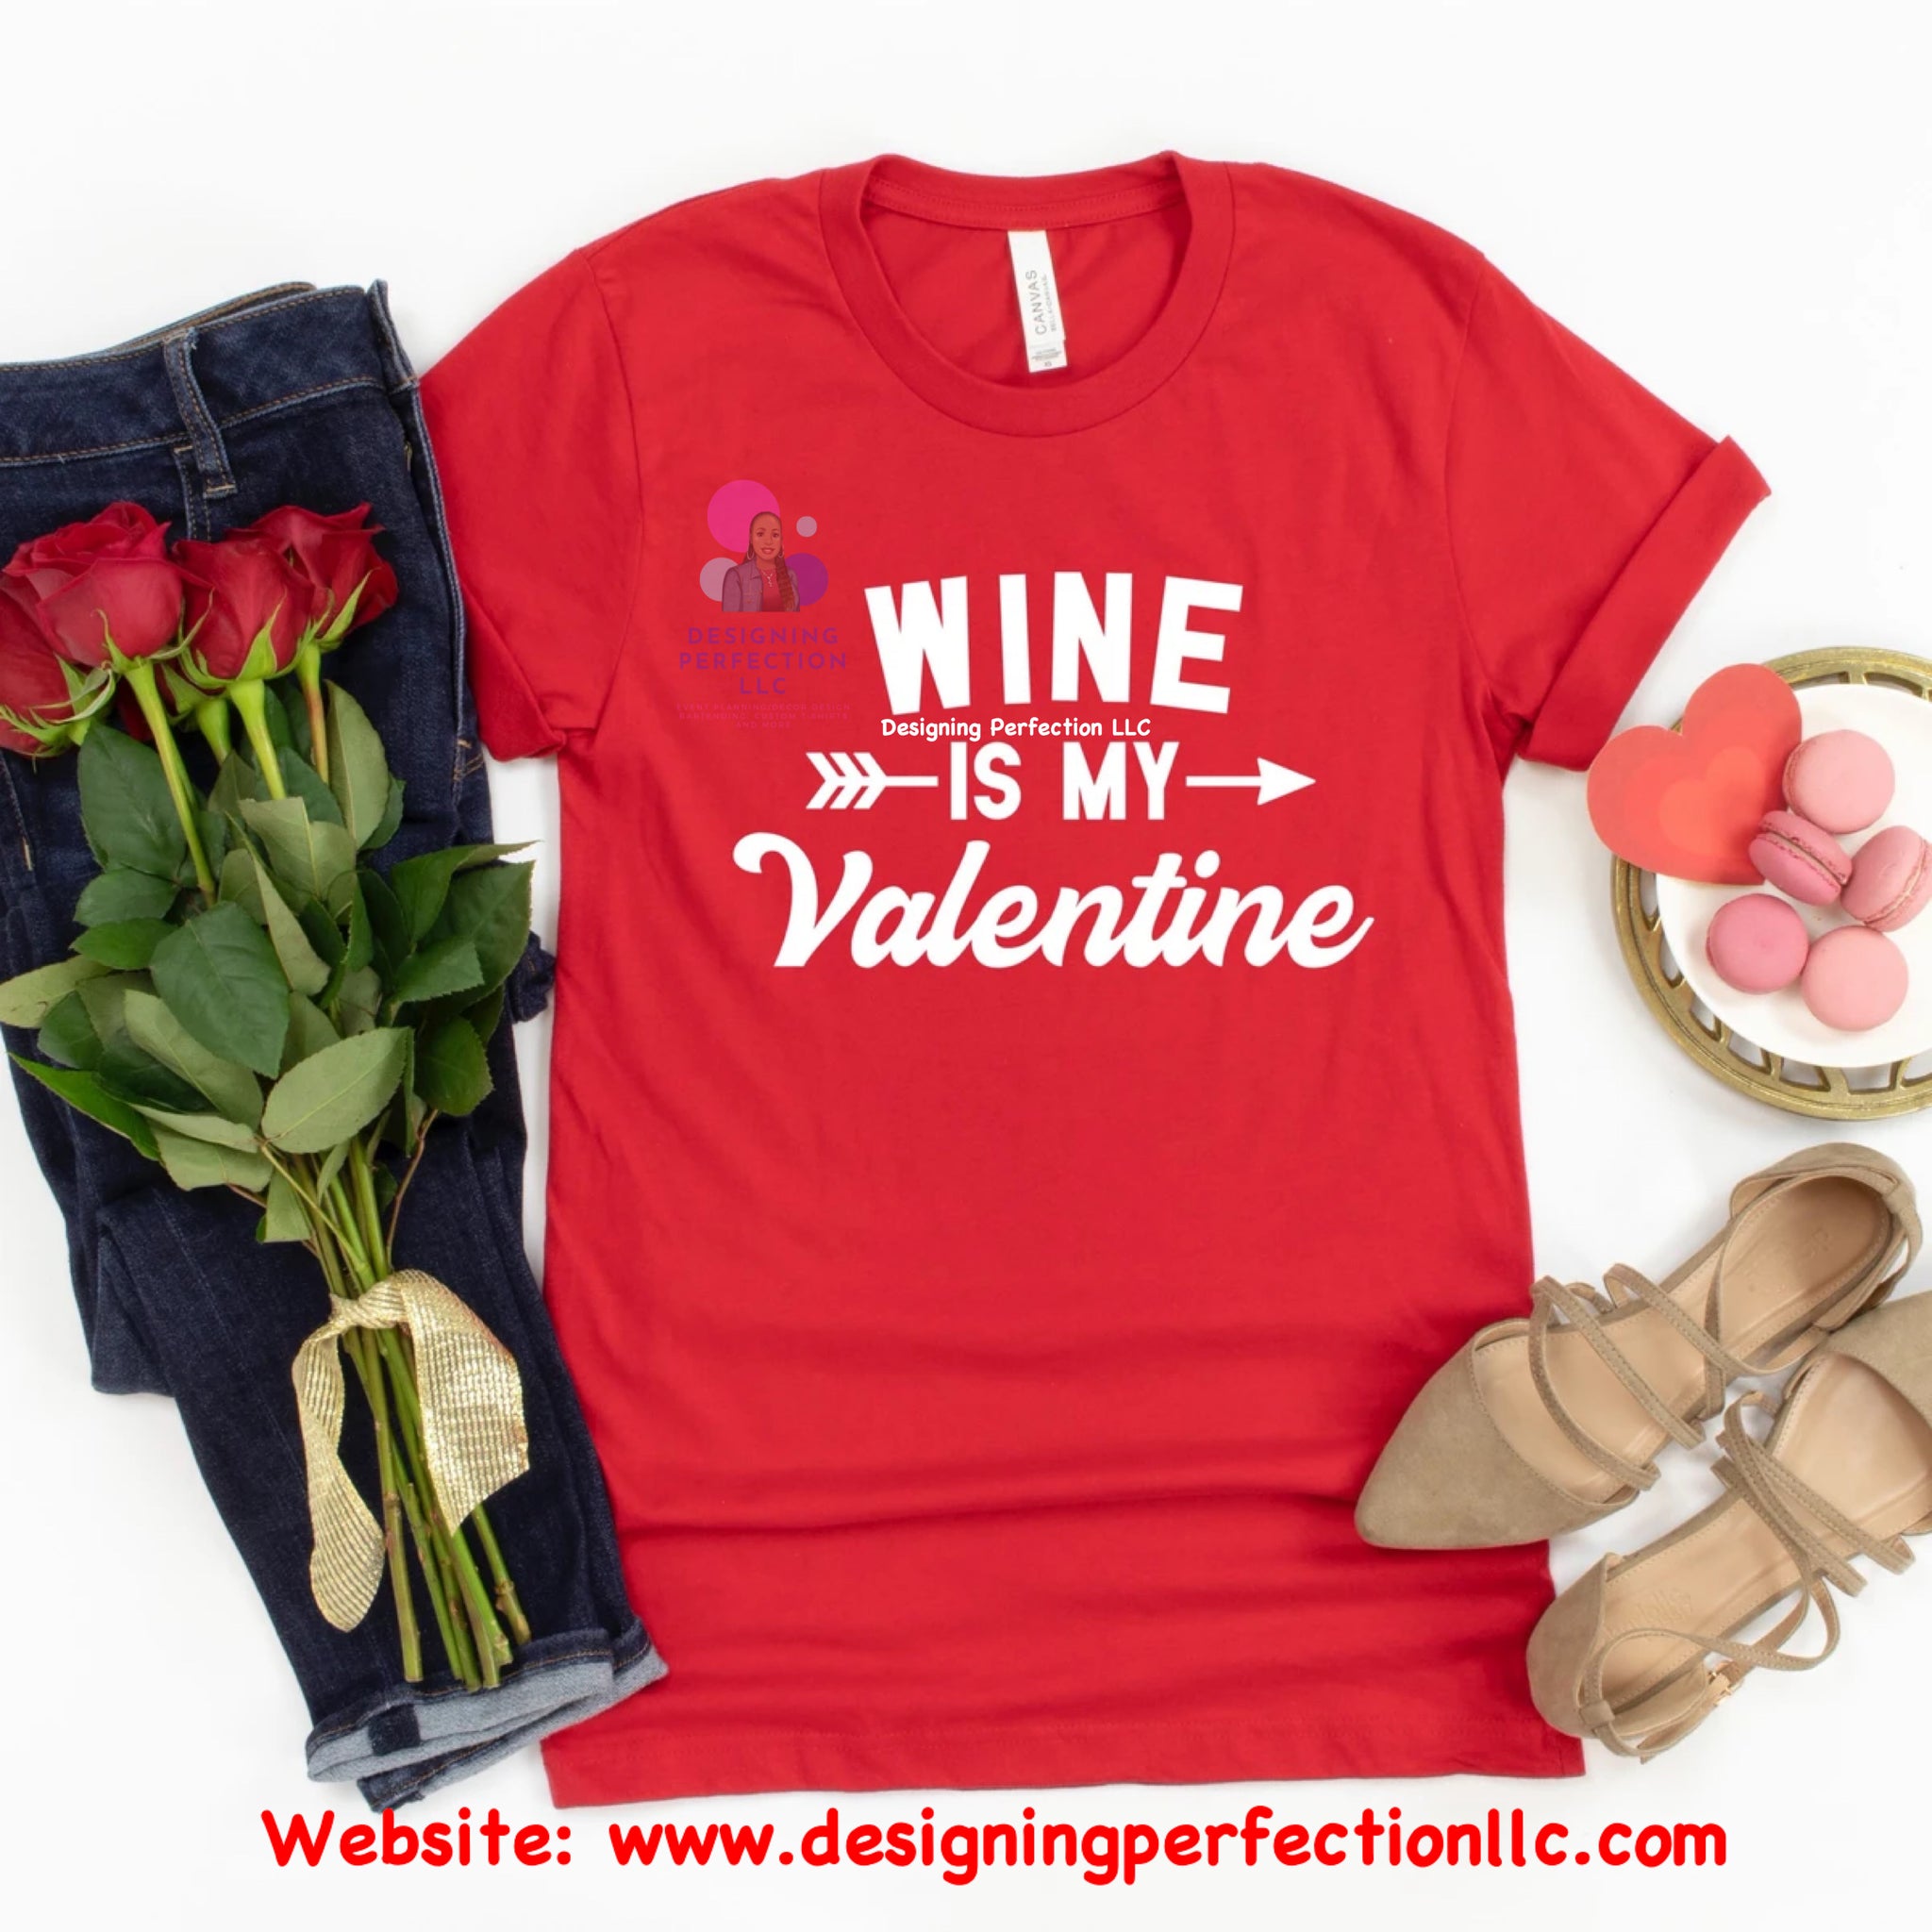 Wine is my Valentine (B1)